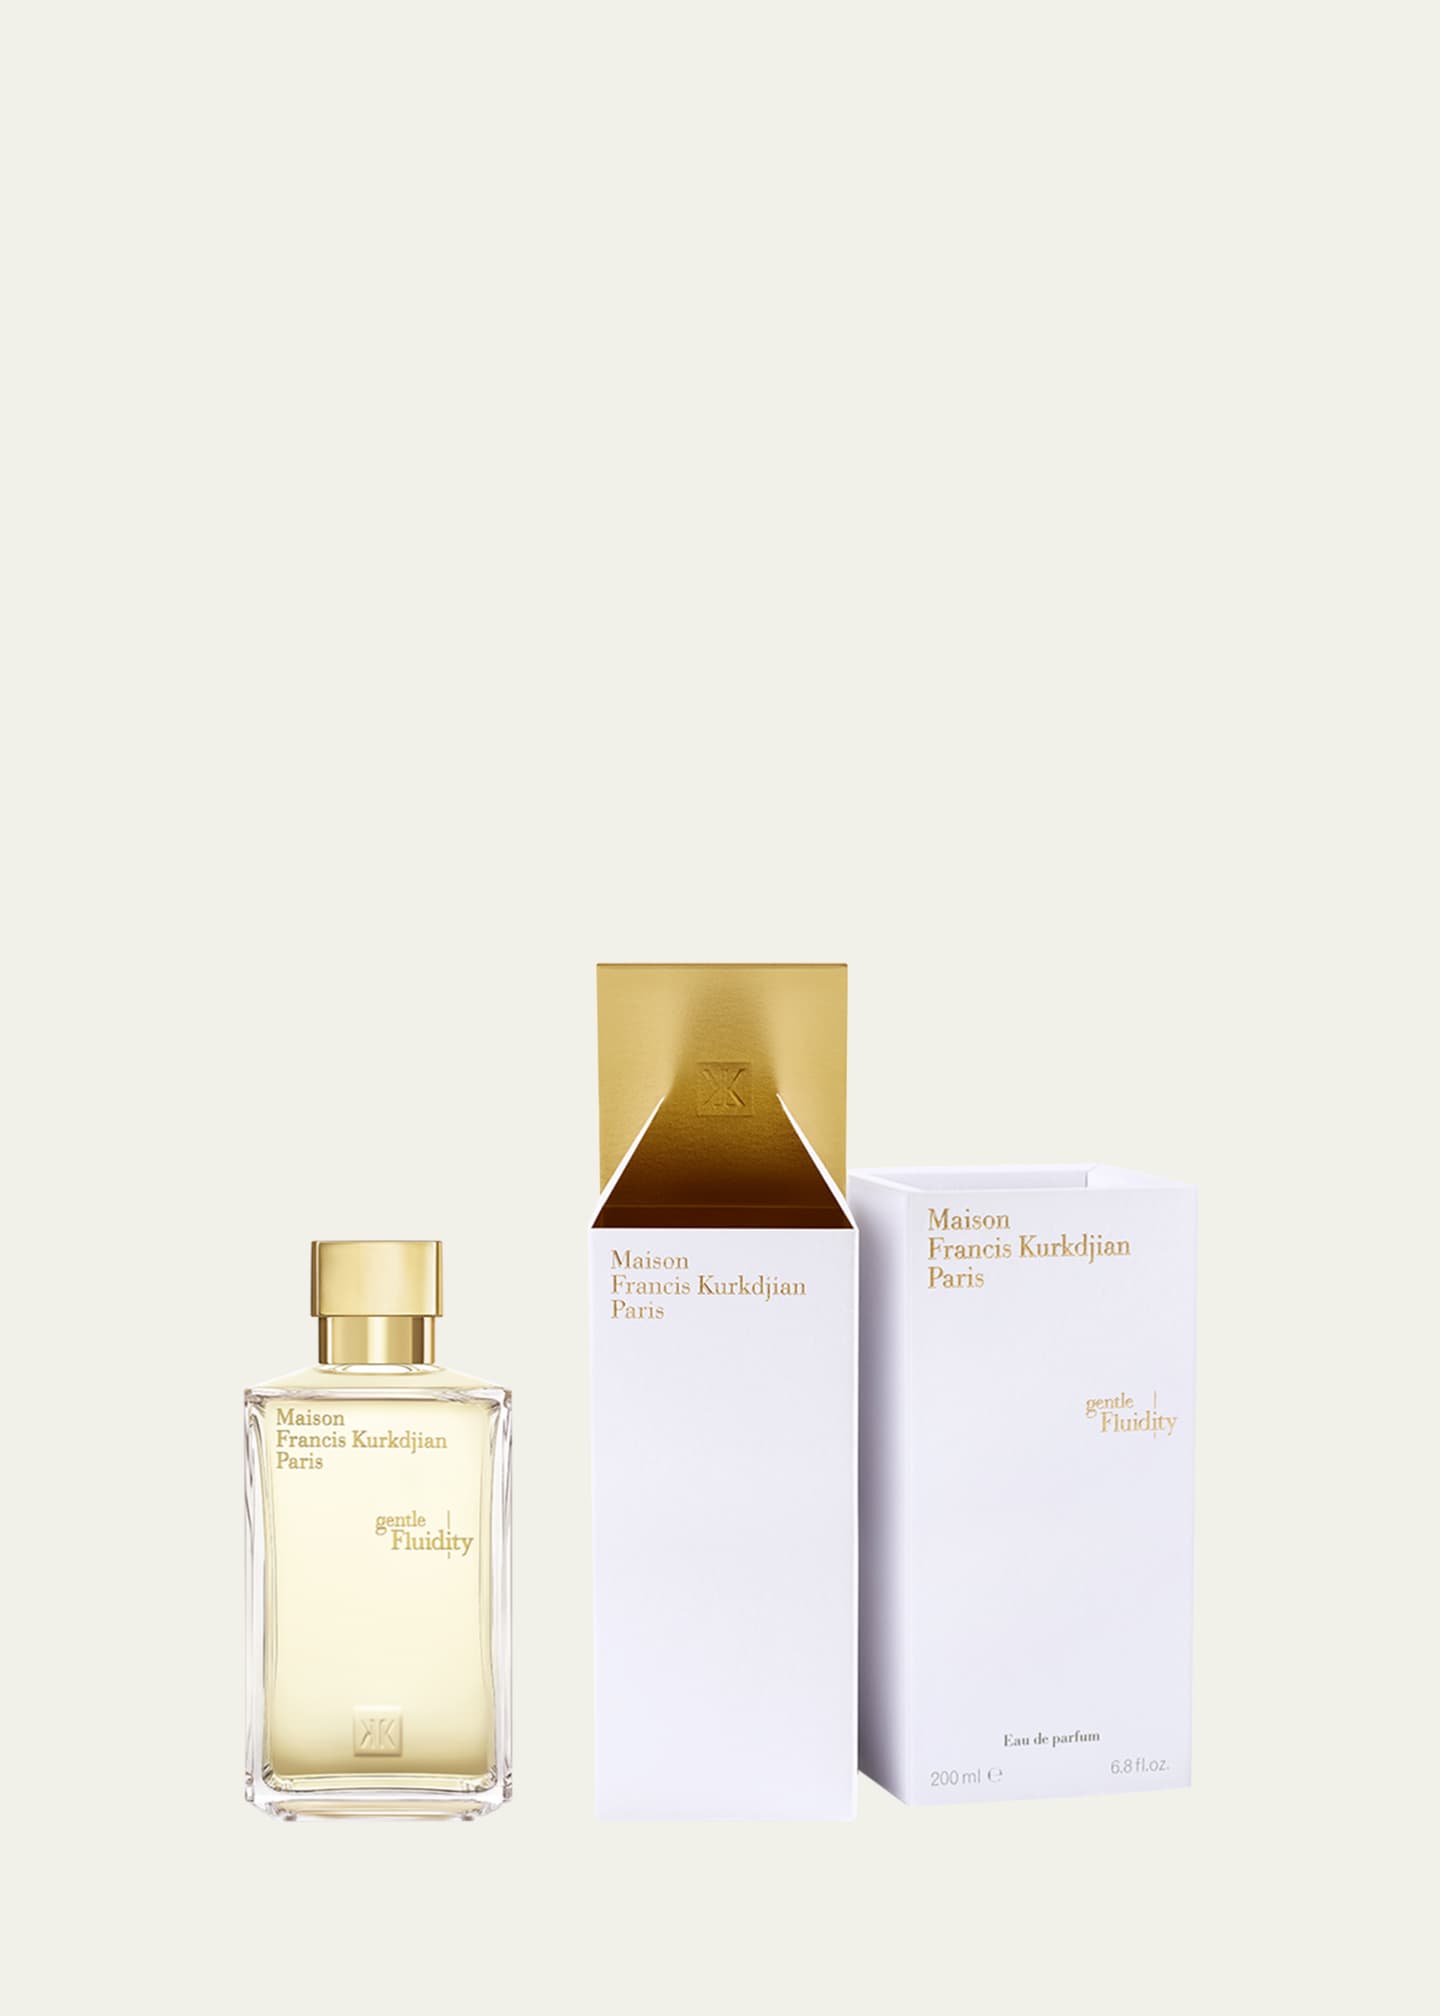 Francis Kurkdjian Gentle Fluidity Gold Eau de Parfum, 6.8 oz. - ShopStyle  Fragrances